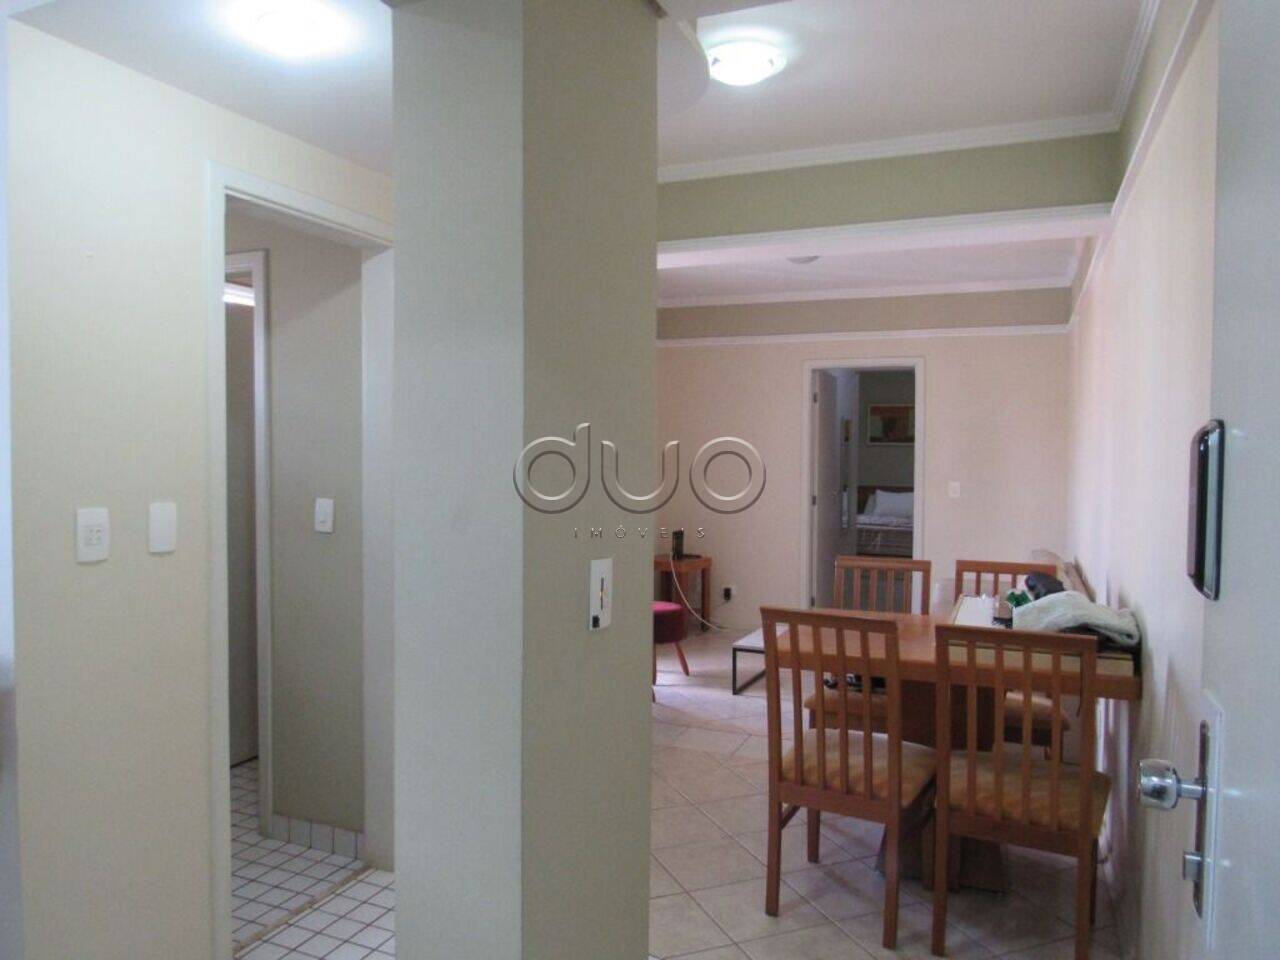 Apartamento com 1 dormitório à venda, 48 m² por R$ 250.000 - Alto - Piracicaba/SP